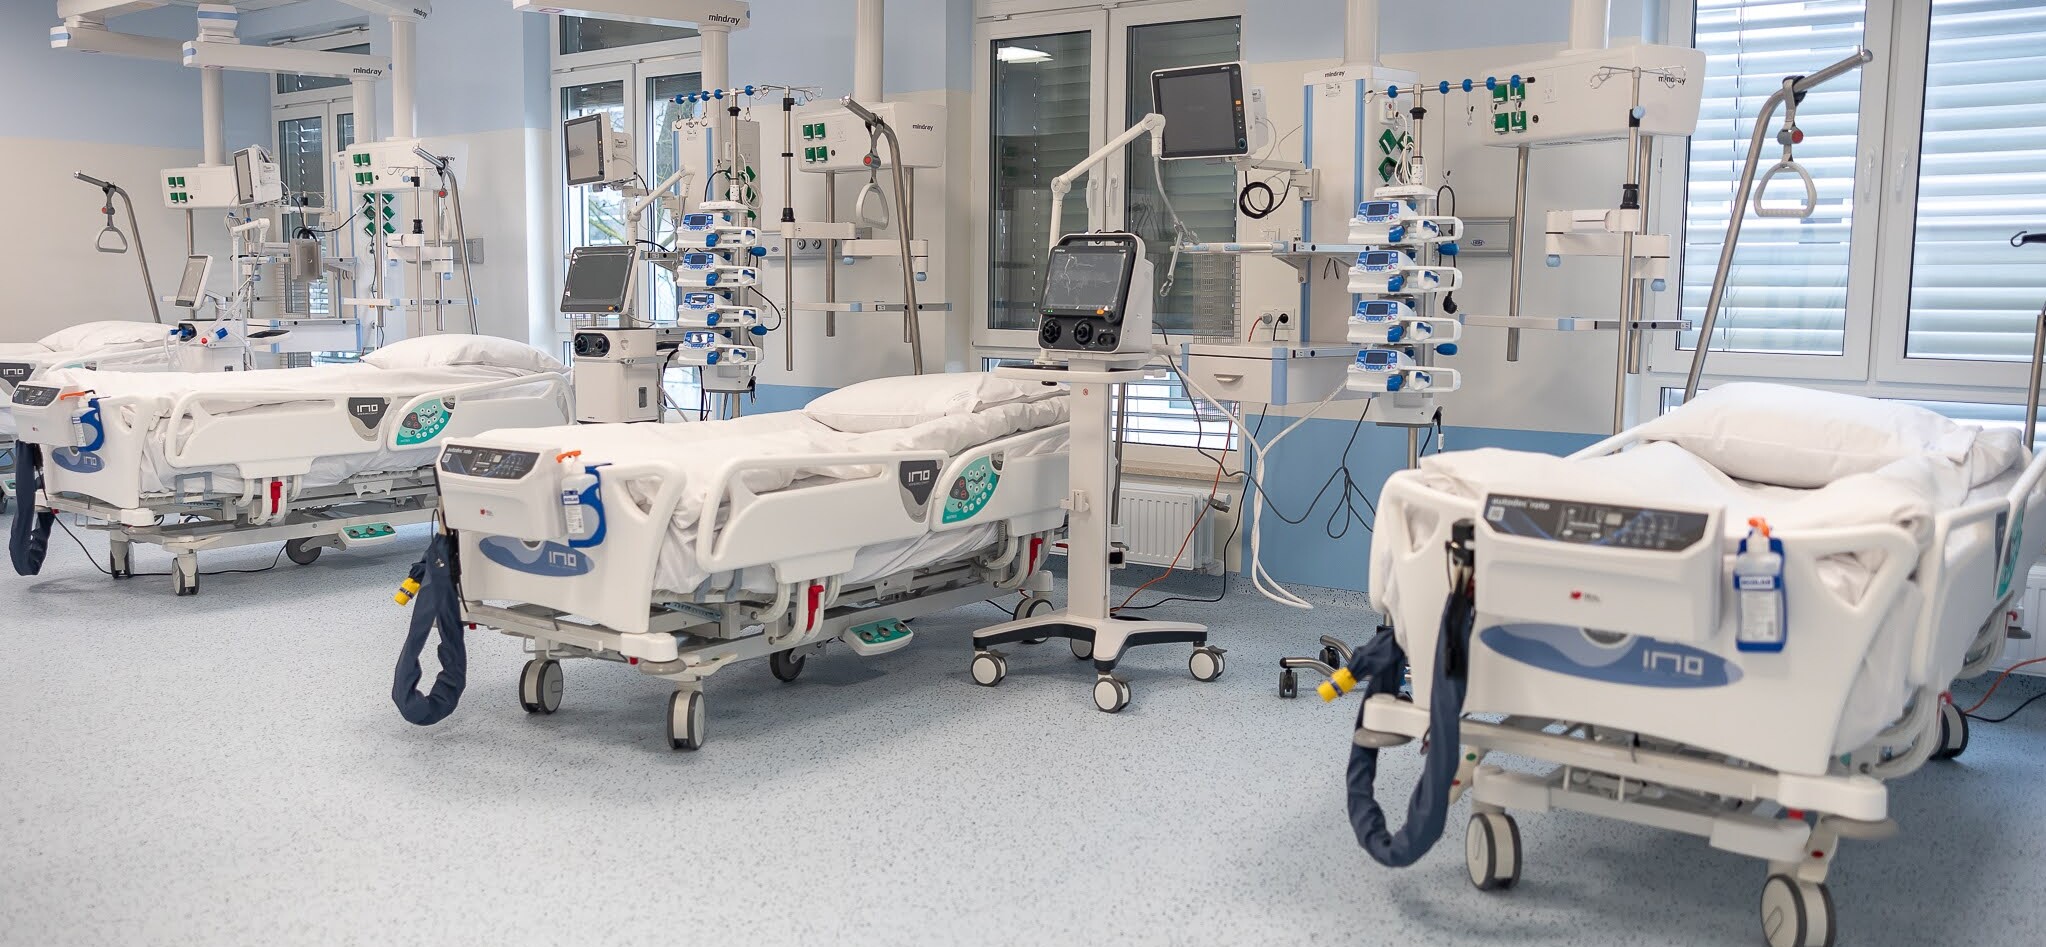 Łóżka szpitalne i sprzęt medyczny w szpitalu